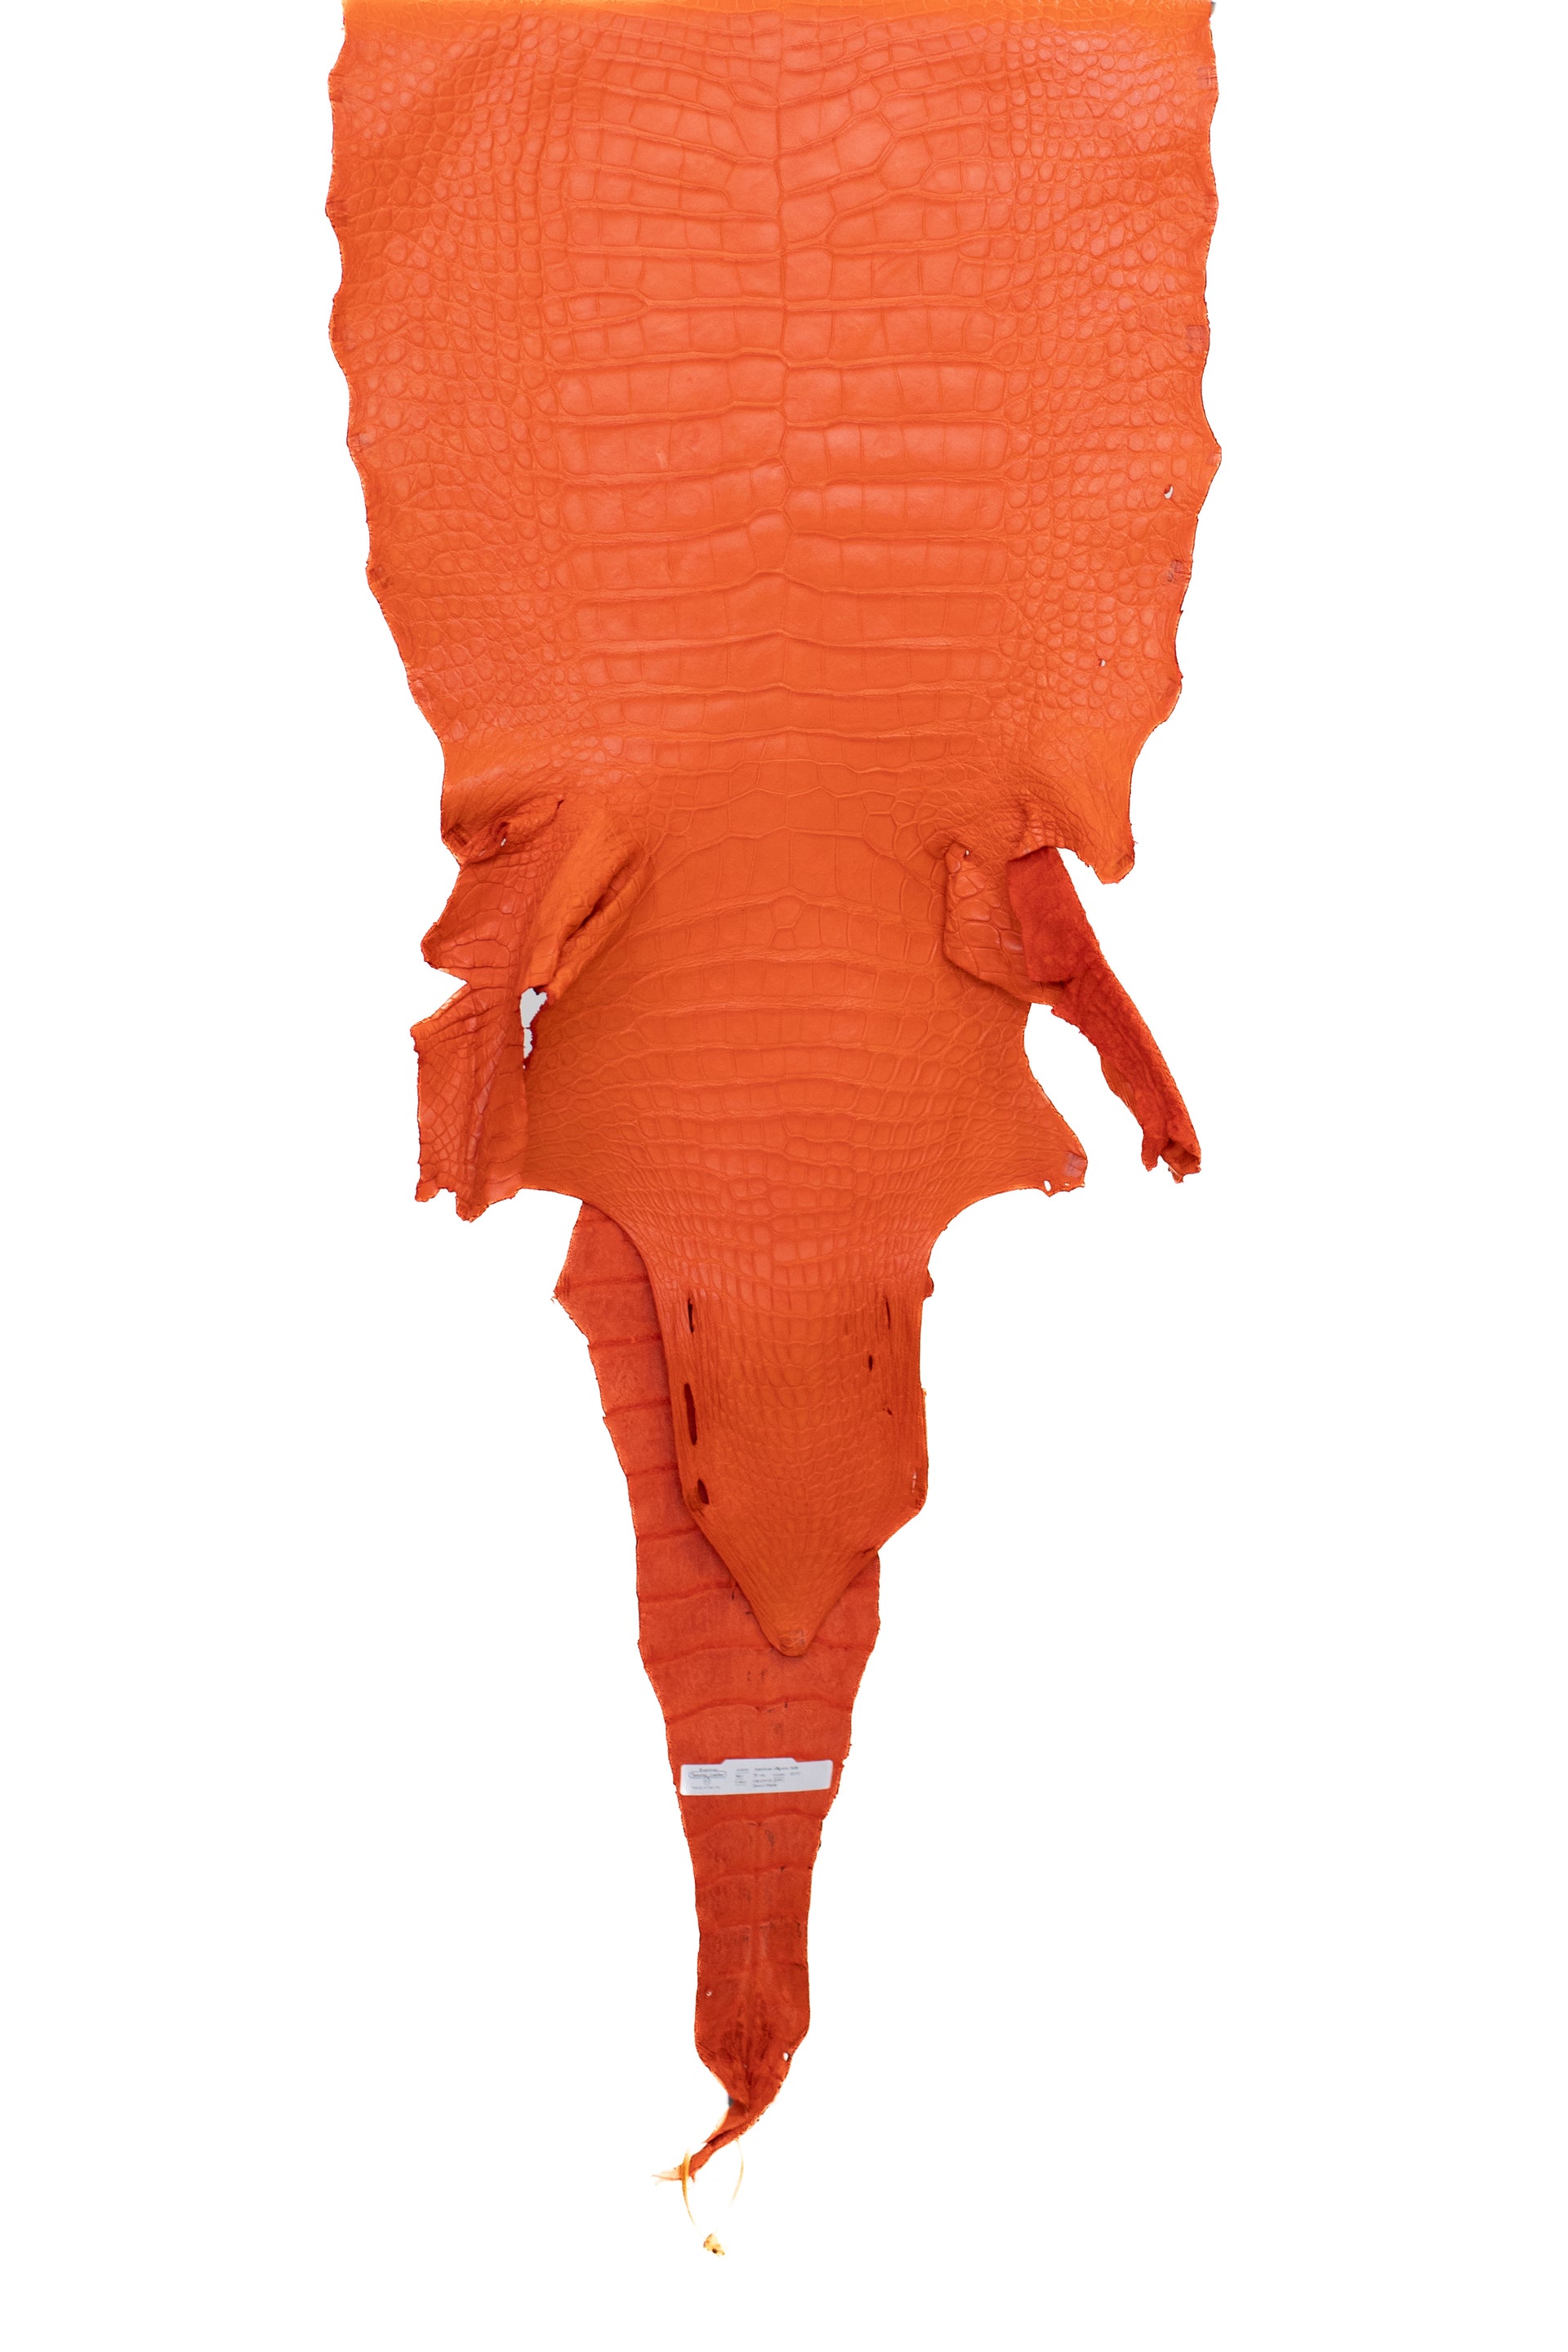 51 cm Grade 3/4 Orange Matte Wild American Alligator Leather - Tag: LA22-0031262